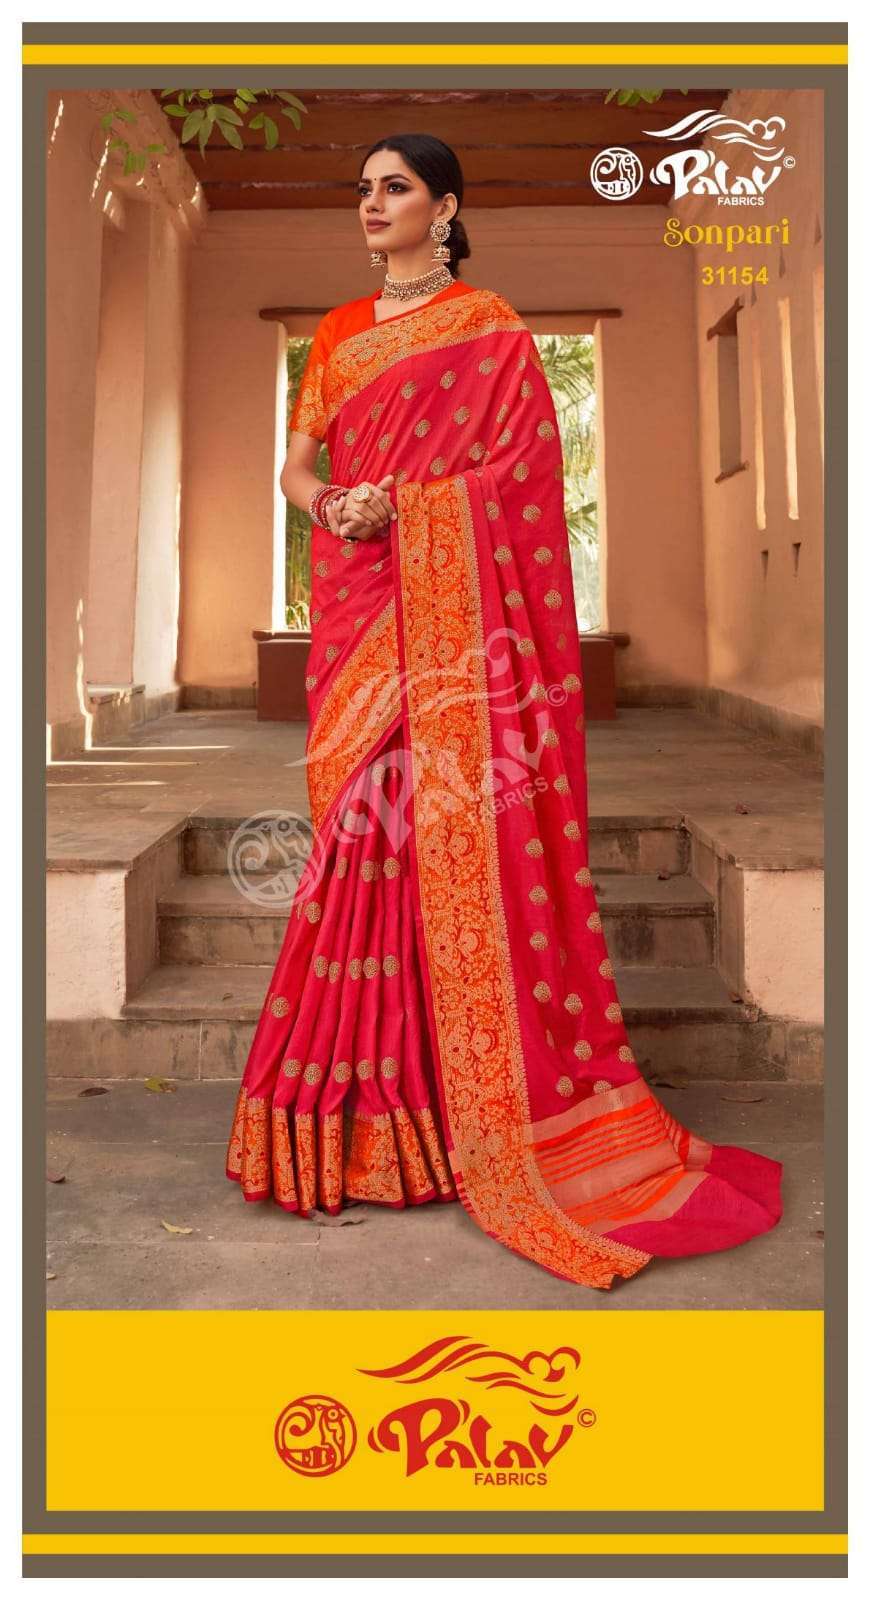 Palav Fabrics Sonpari Silk Traditional Sarees Collection 06